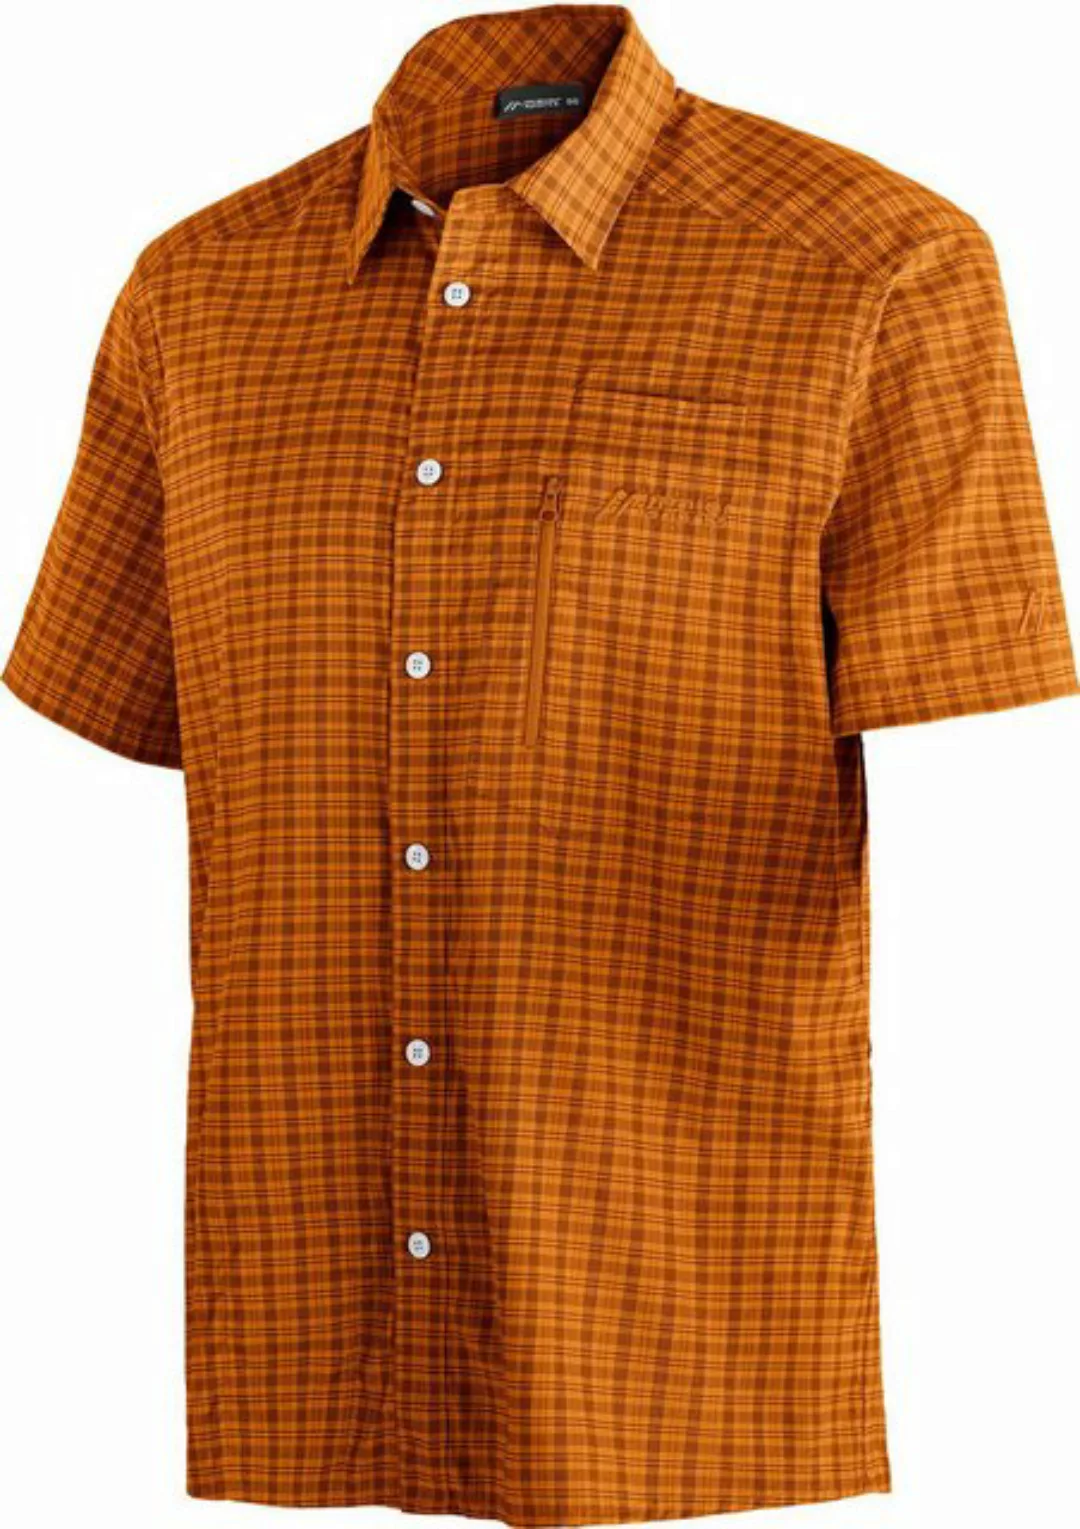 Maier Sports Kurzarmhemd Mats S/S He-Hemd 1/2 Arm el. brown / orange check günstig online kaufen